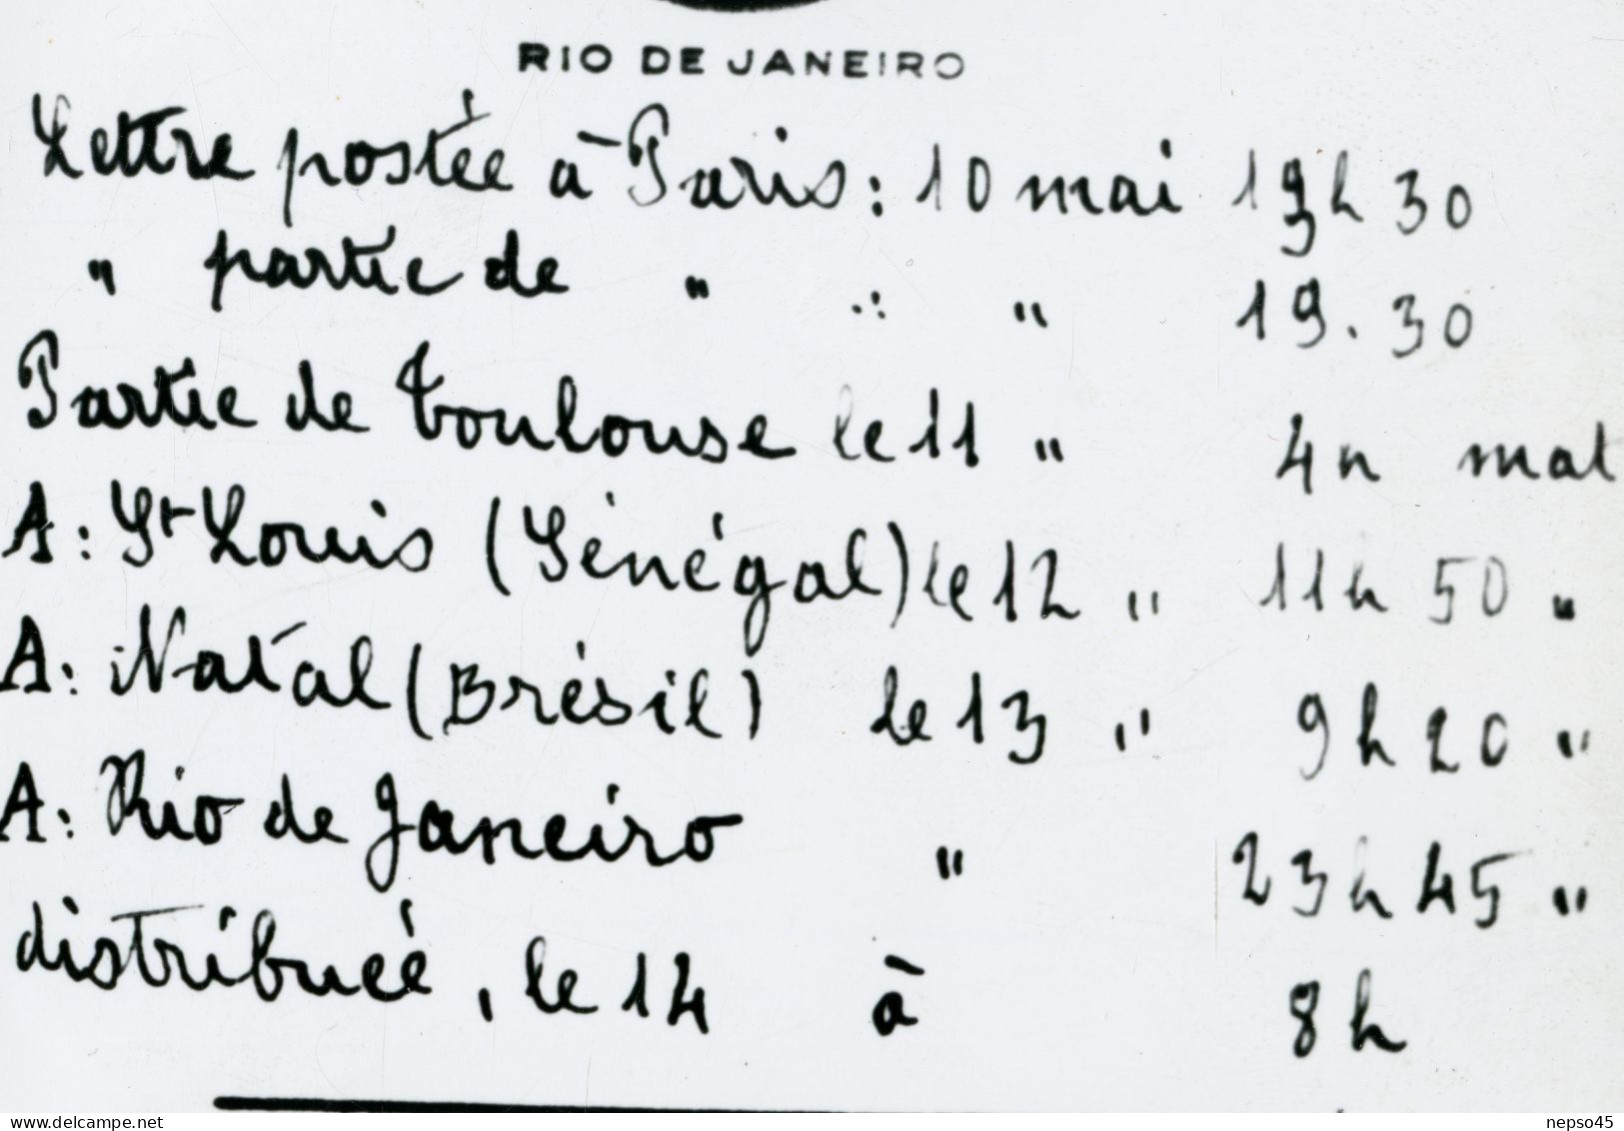 avion.courrier signé Mermoz voyagé liaison postale Paris France et Rio  Amérique du sud.Laté 28.détails du voyage.